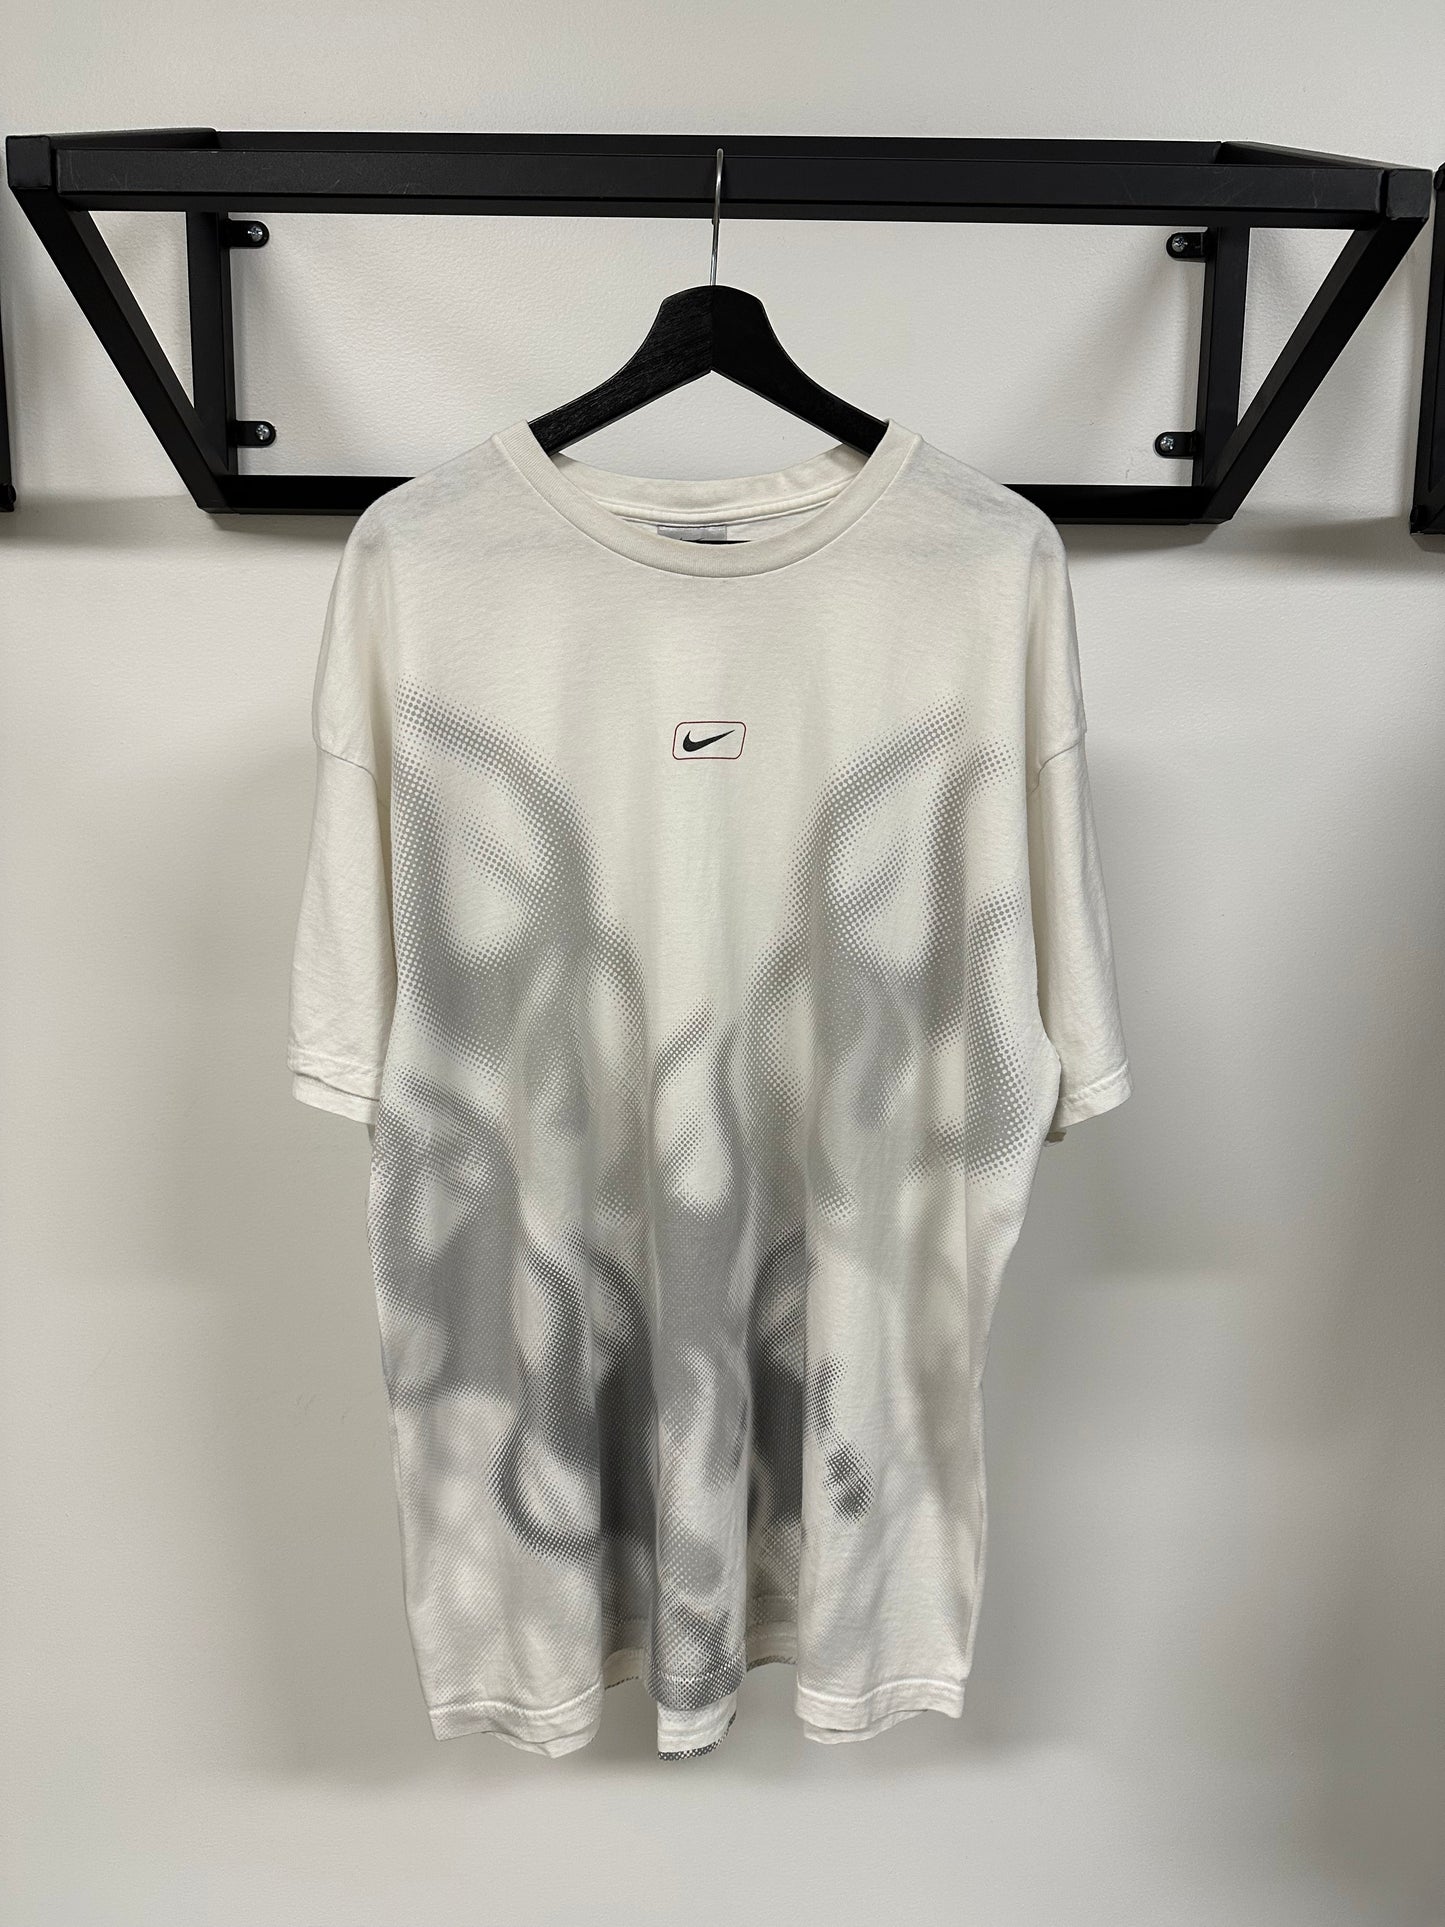 Vintage Nike Air Bakin Shirt XXL